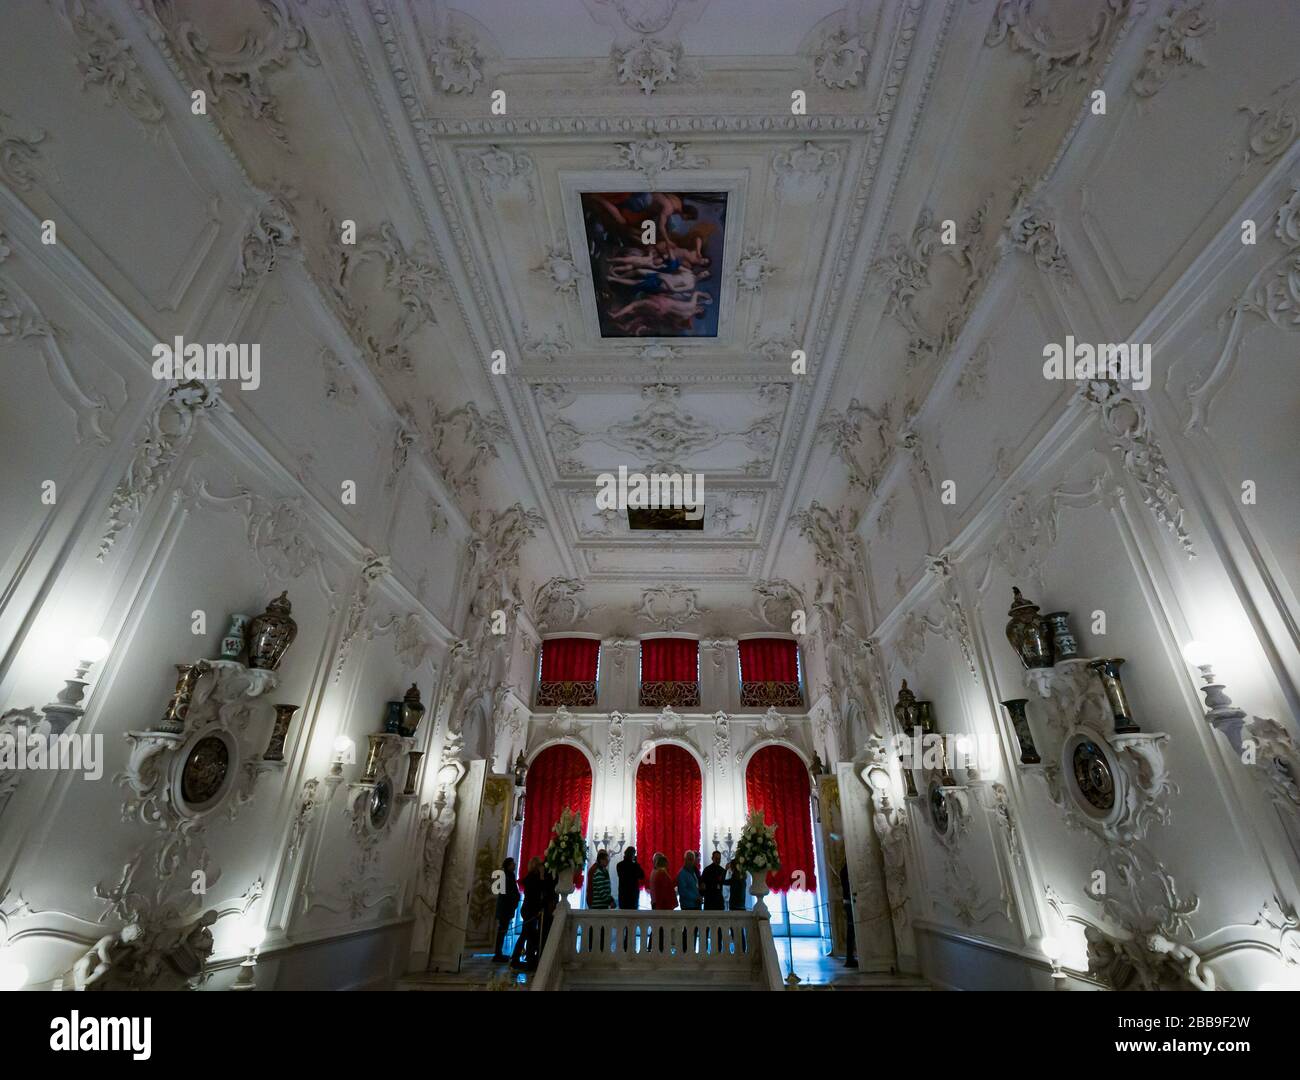 Plafond en plâtre orné, intérieur du Palais Catherine, village de Tsars, Tsarskoe Selo, Pouchkine, Fédération de Russie Banque D'Images